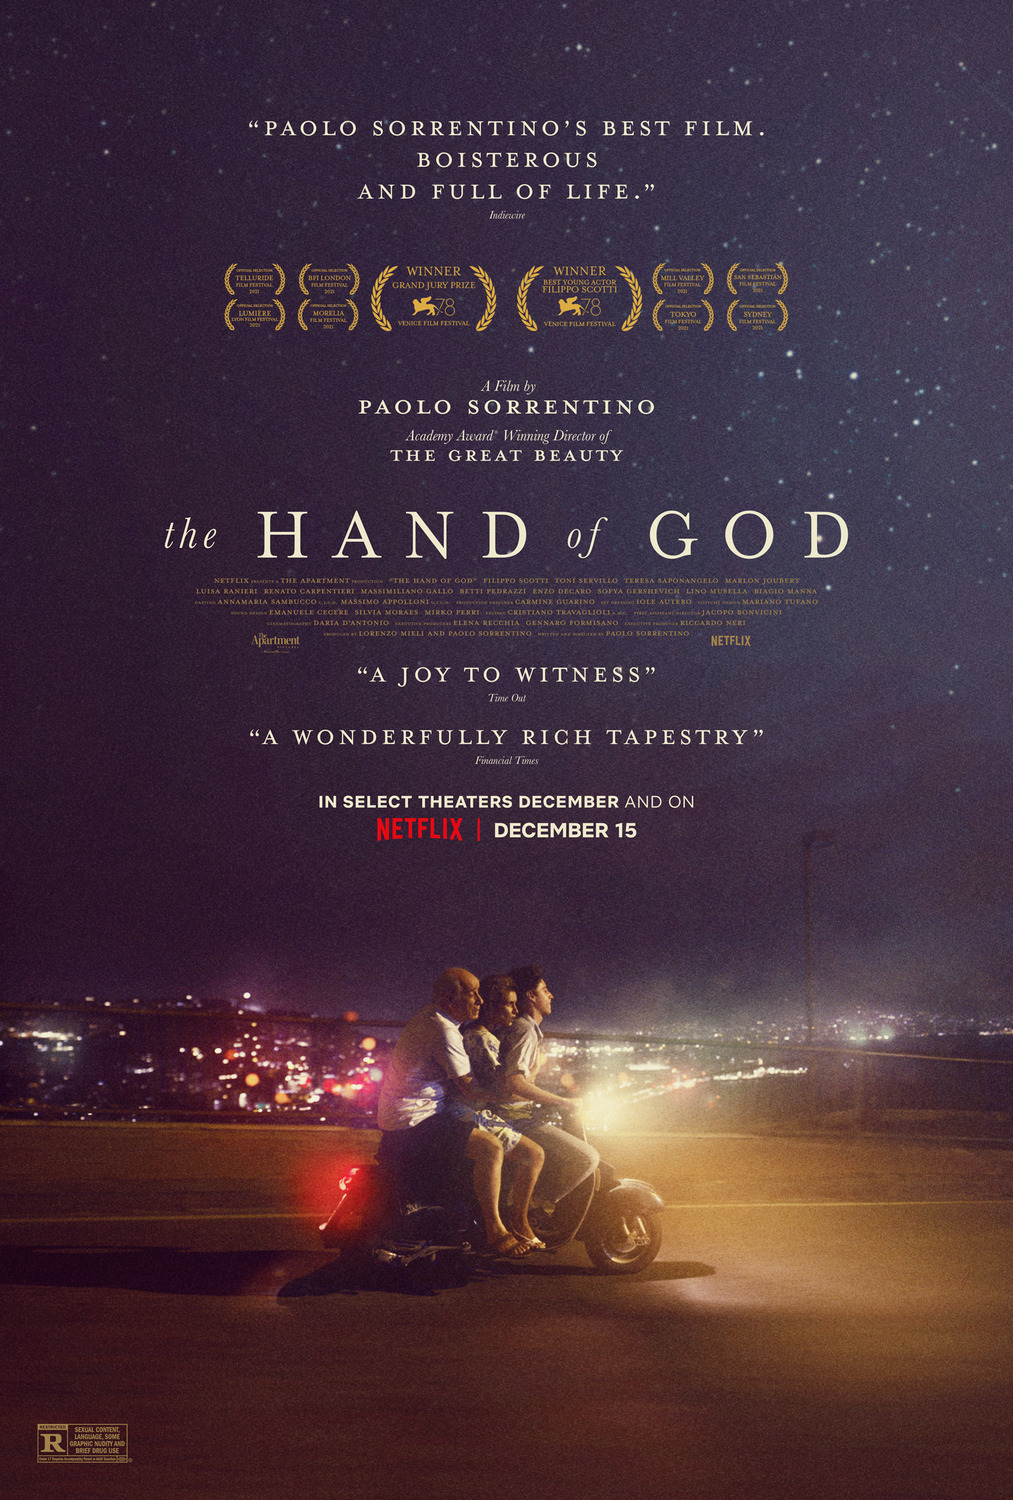 Extra Large Movie Poster Image for È stata la mano di Dio (#4 of 5)